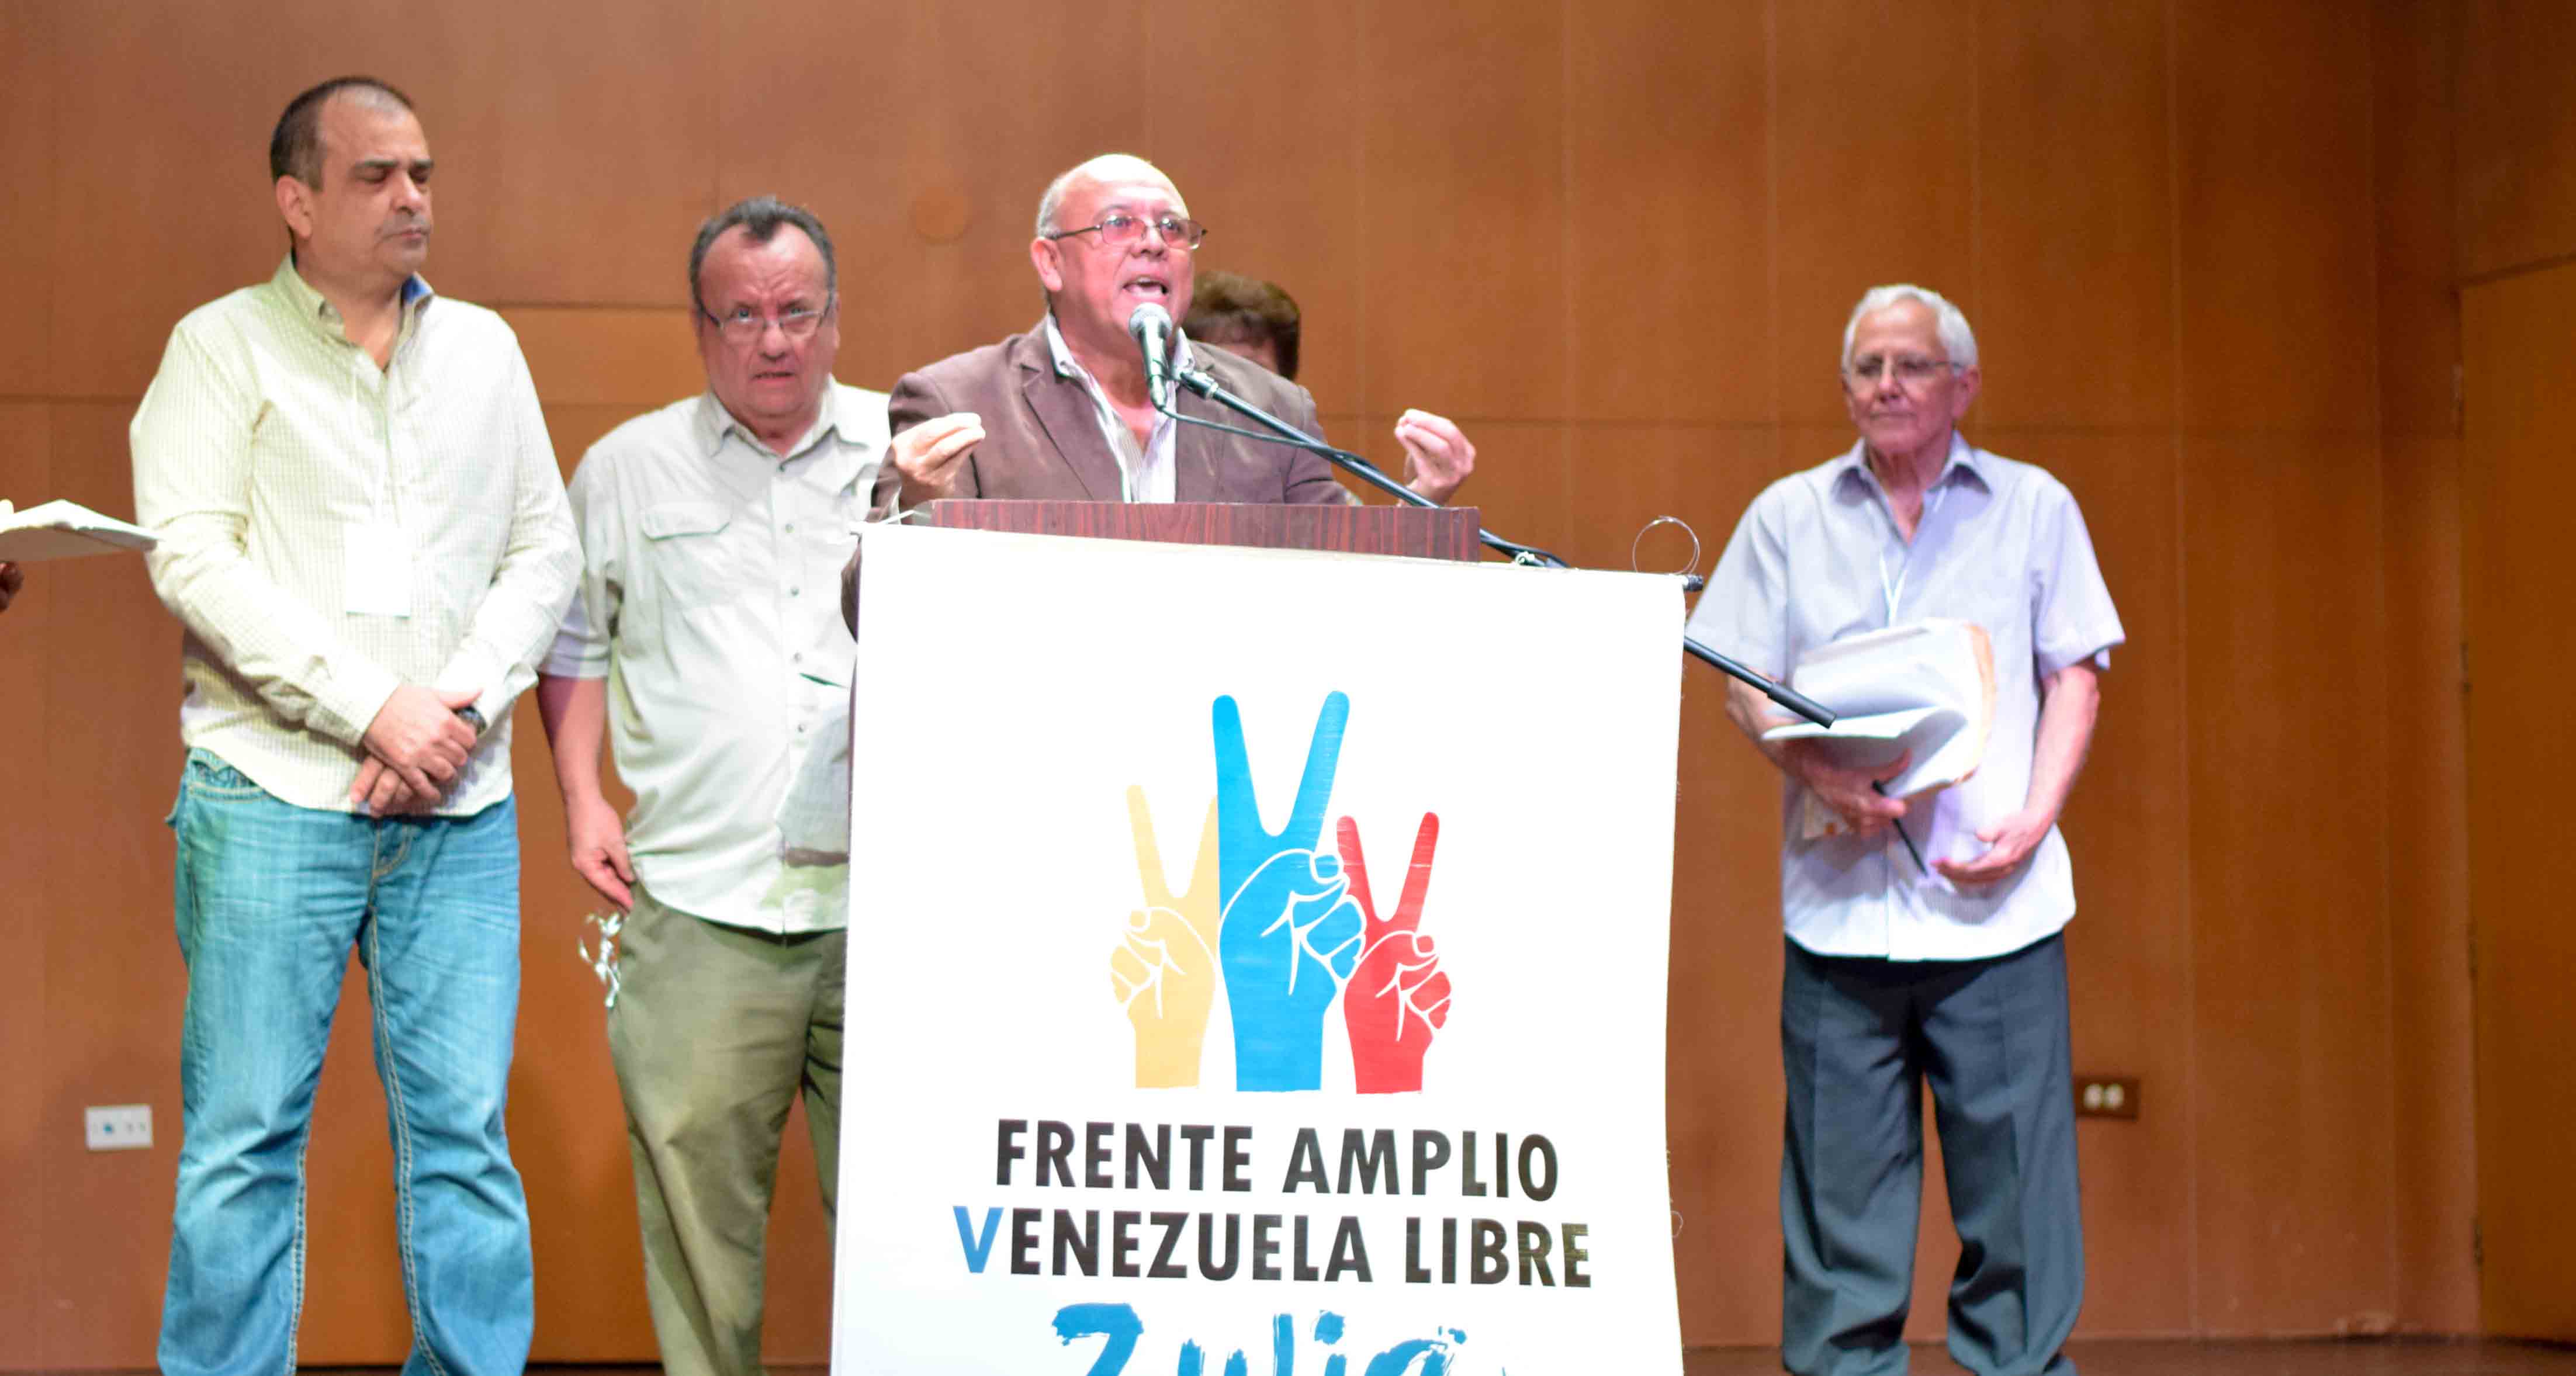 Congreso Zulia Libre: Le decimos al país que sí hay una ruta para salir de la dictadura